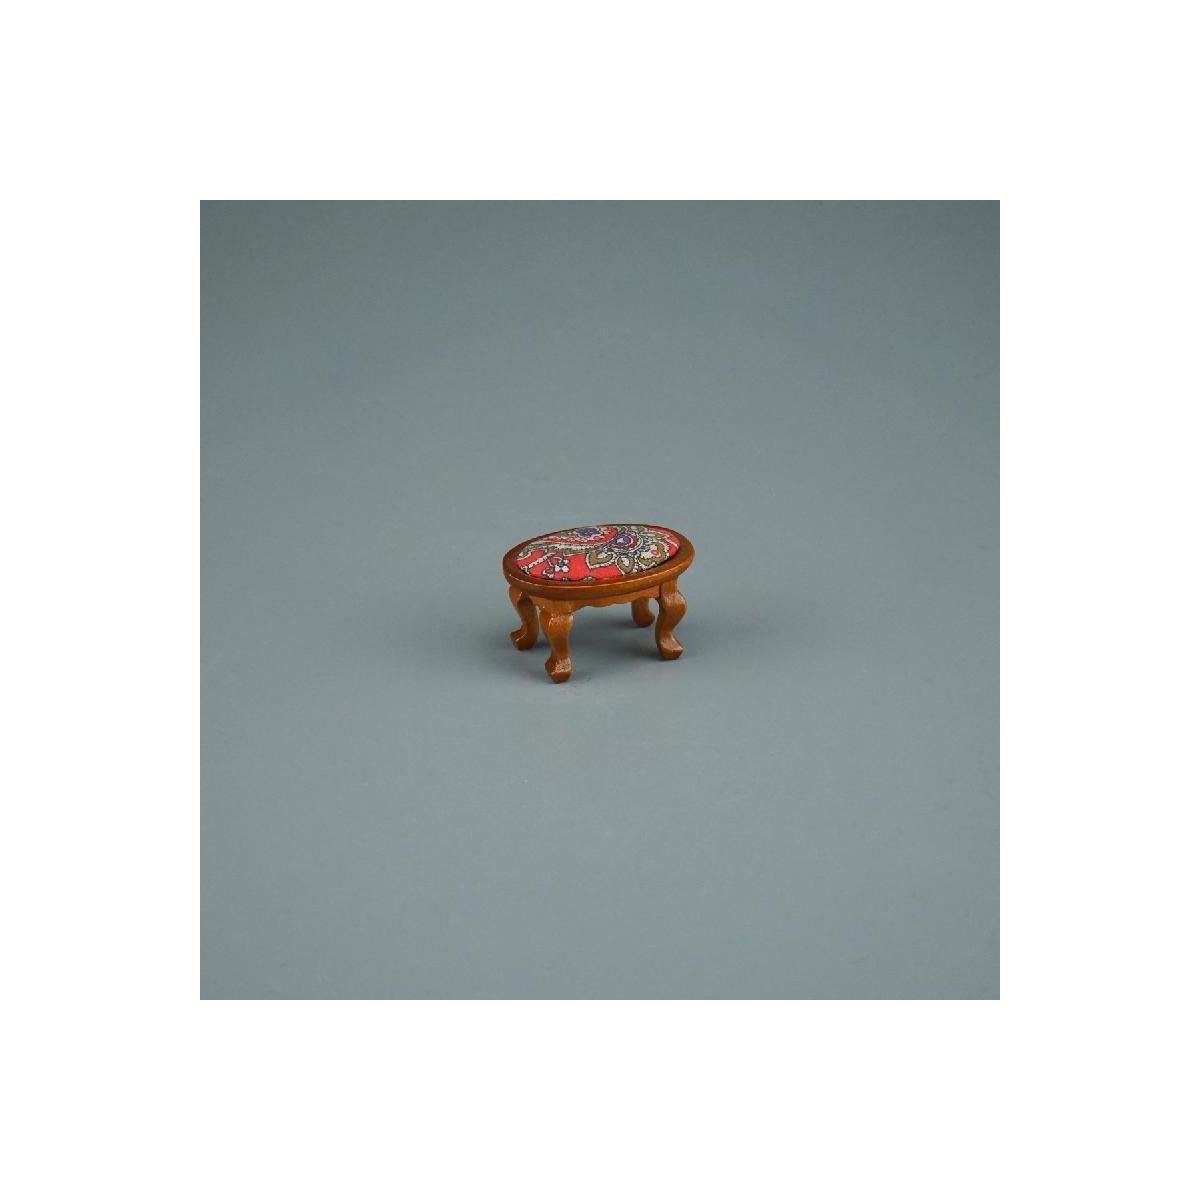 Reutter Porzellan Dekofigur 001.862/4 Miniatur Hocker rot, - Maßstab 1:12 im Gepolsterter